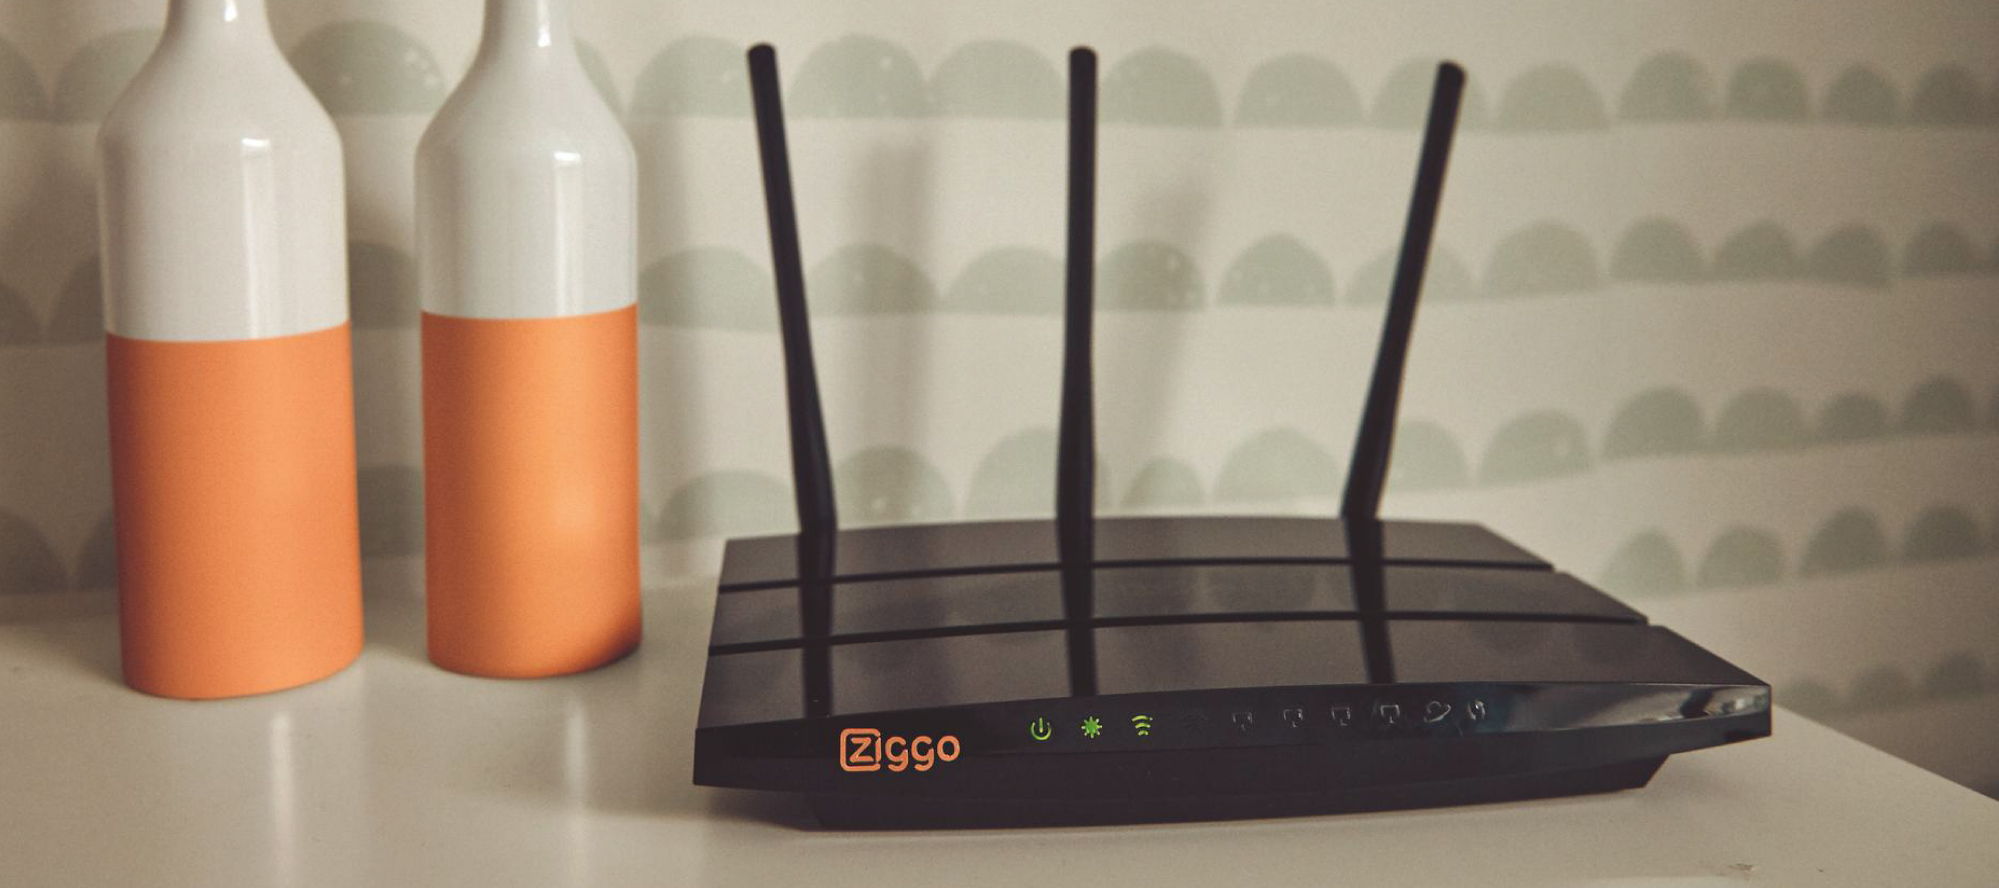 krullen ui verwarring Ziggo' ISP Scared Customers With Spammy Security Notice - TechNadu